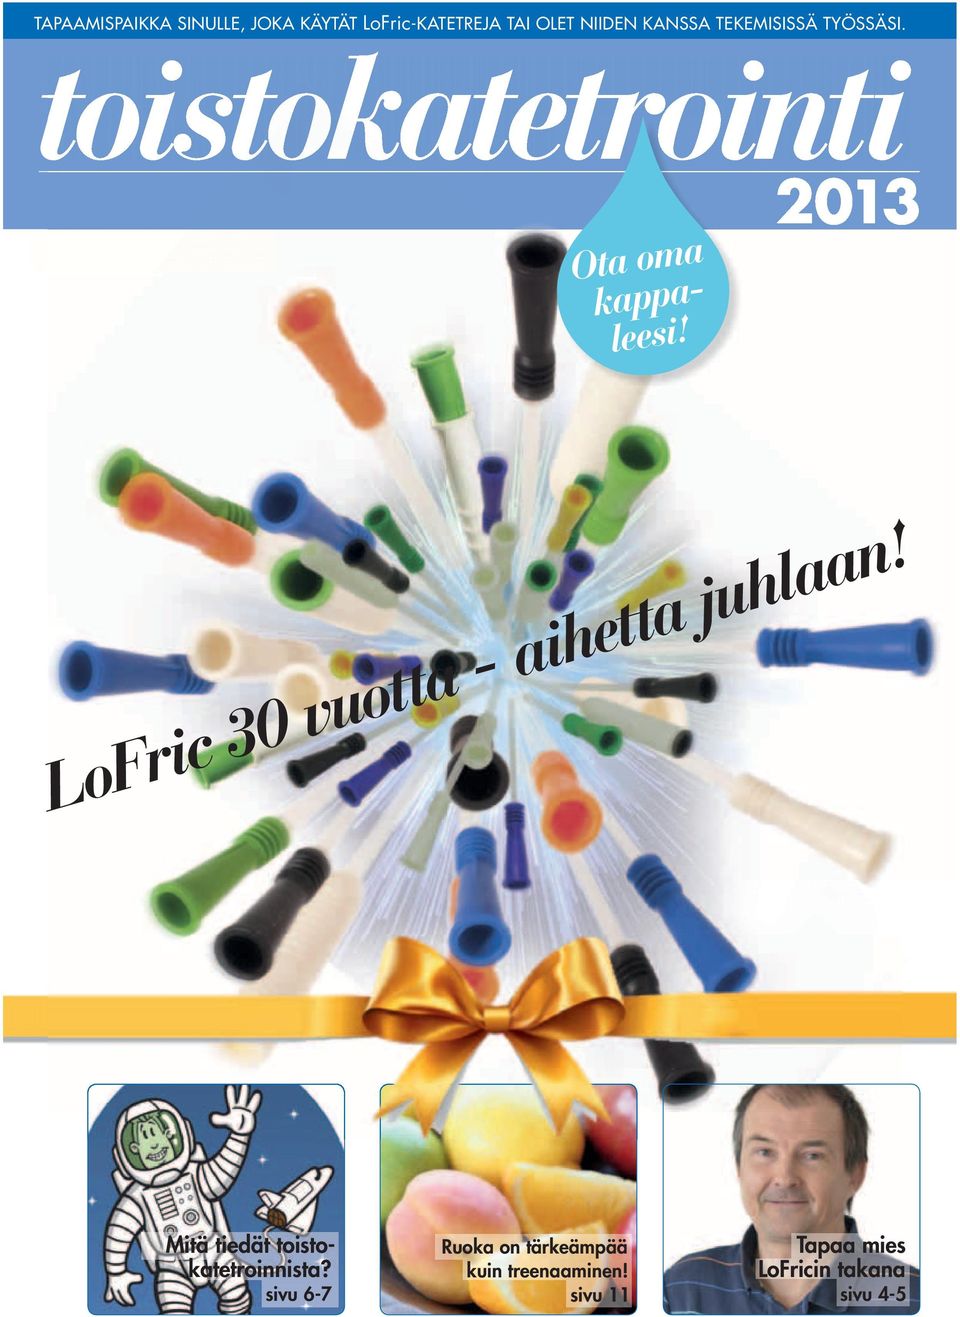 2013 LoFric 30 vuotta - aihetta juhlaan! Mitä tiedät toistokatetroinnista?